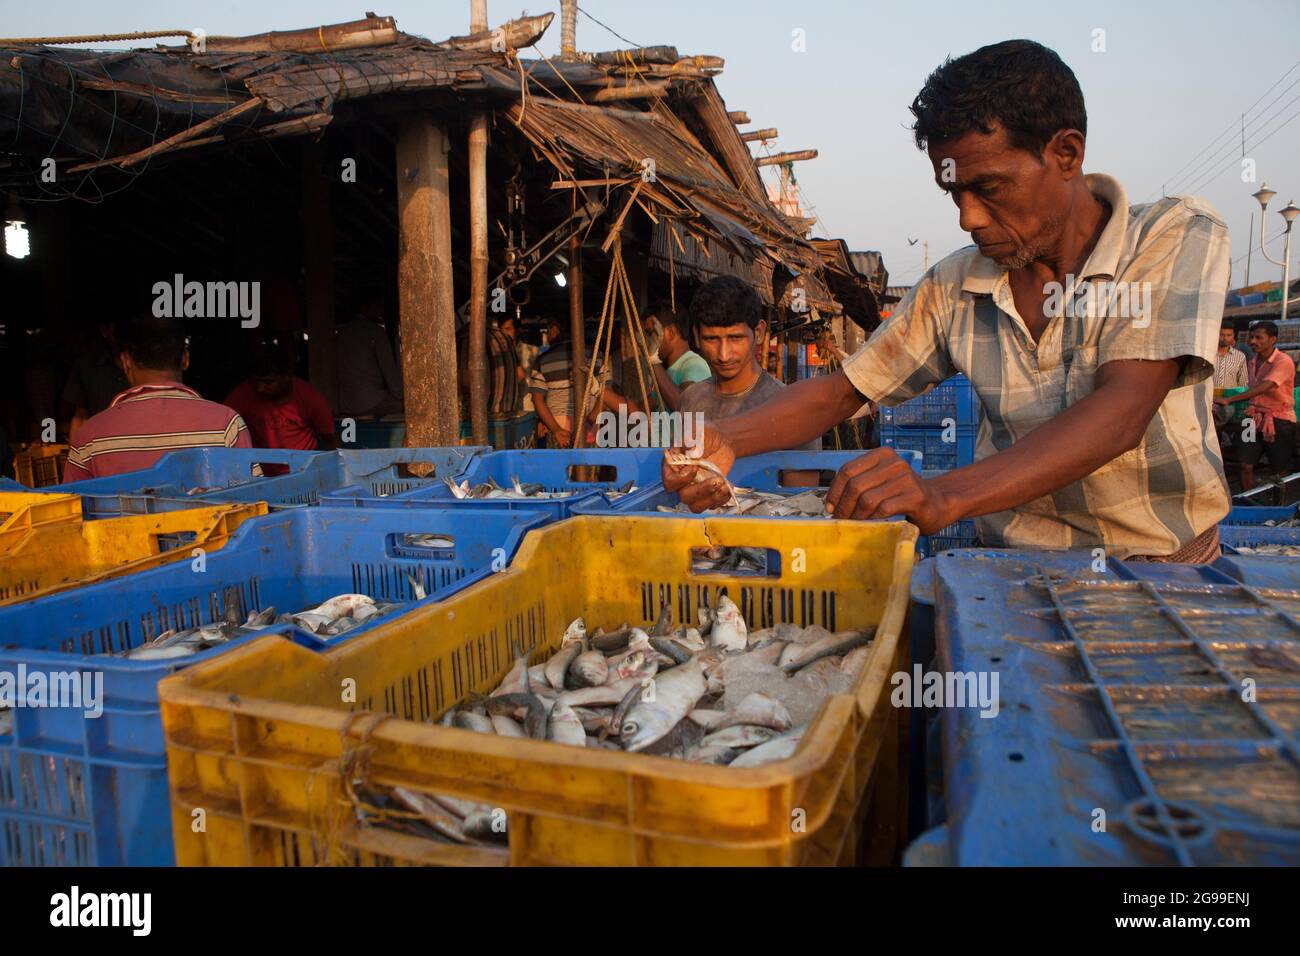 Geschäftige Aktivitäten auf dem Fischgroßmarkt in Digha, Westbengalen, Indien, einem der beliebtesten Touristenstrands Bengalens und einem der größten Fischmärkte. Stockfoto